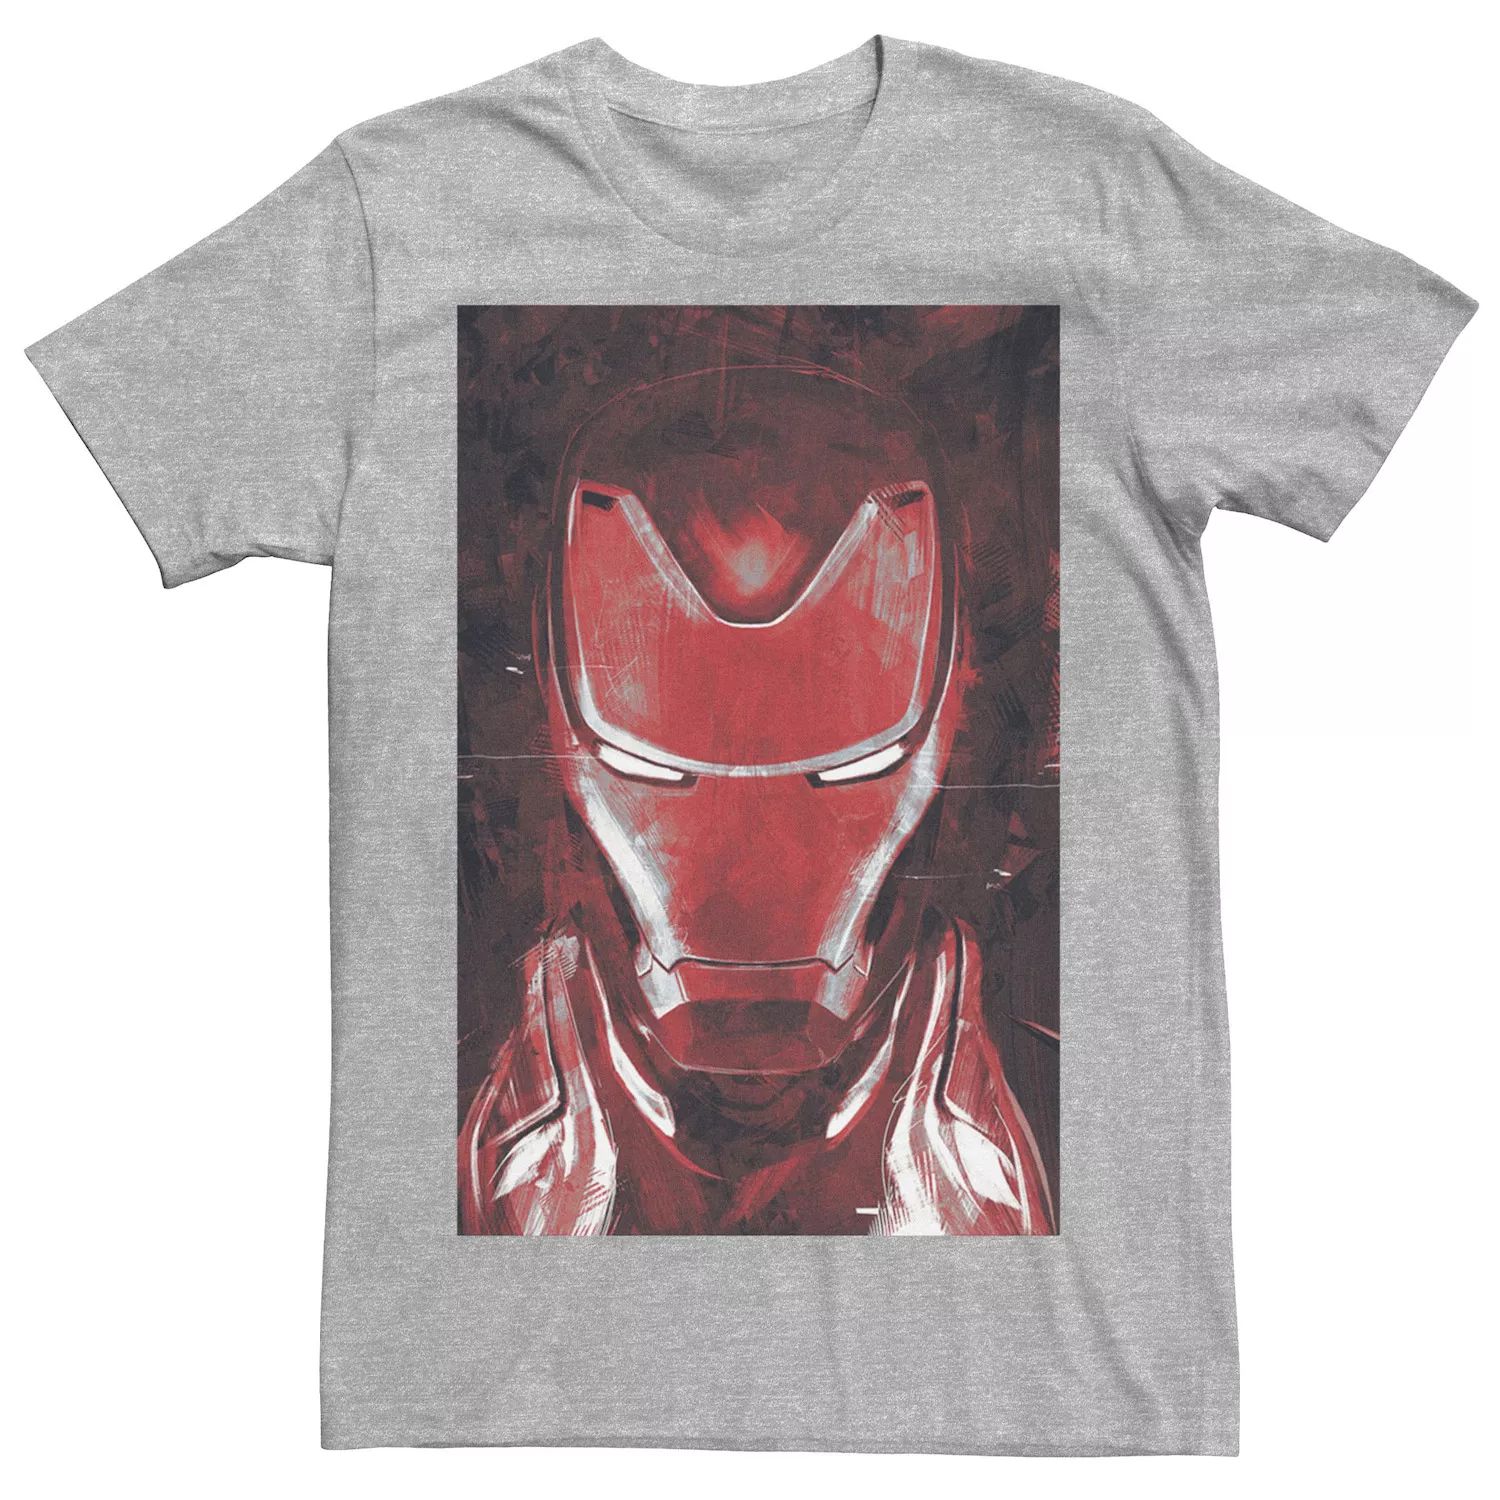 Мужская красная футболка с изображением портрета Железного человека «Мстители: Финал» Marvel